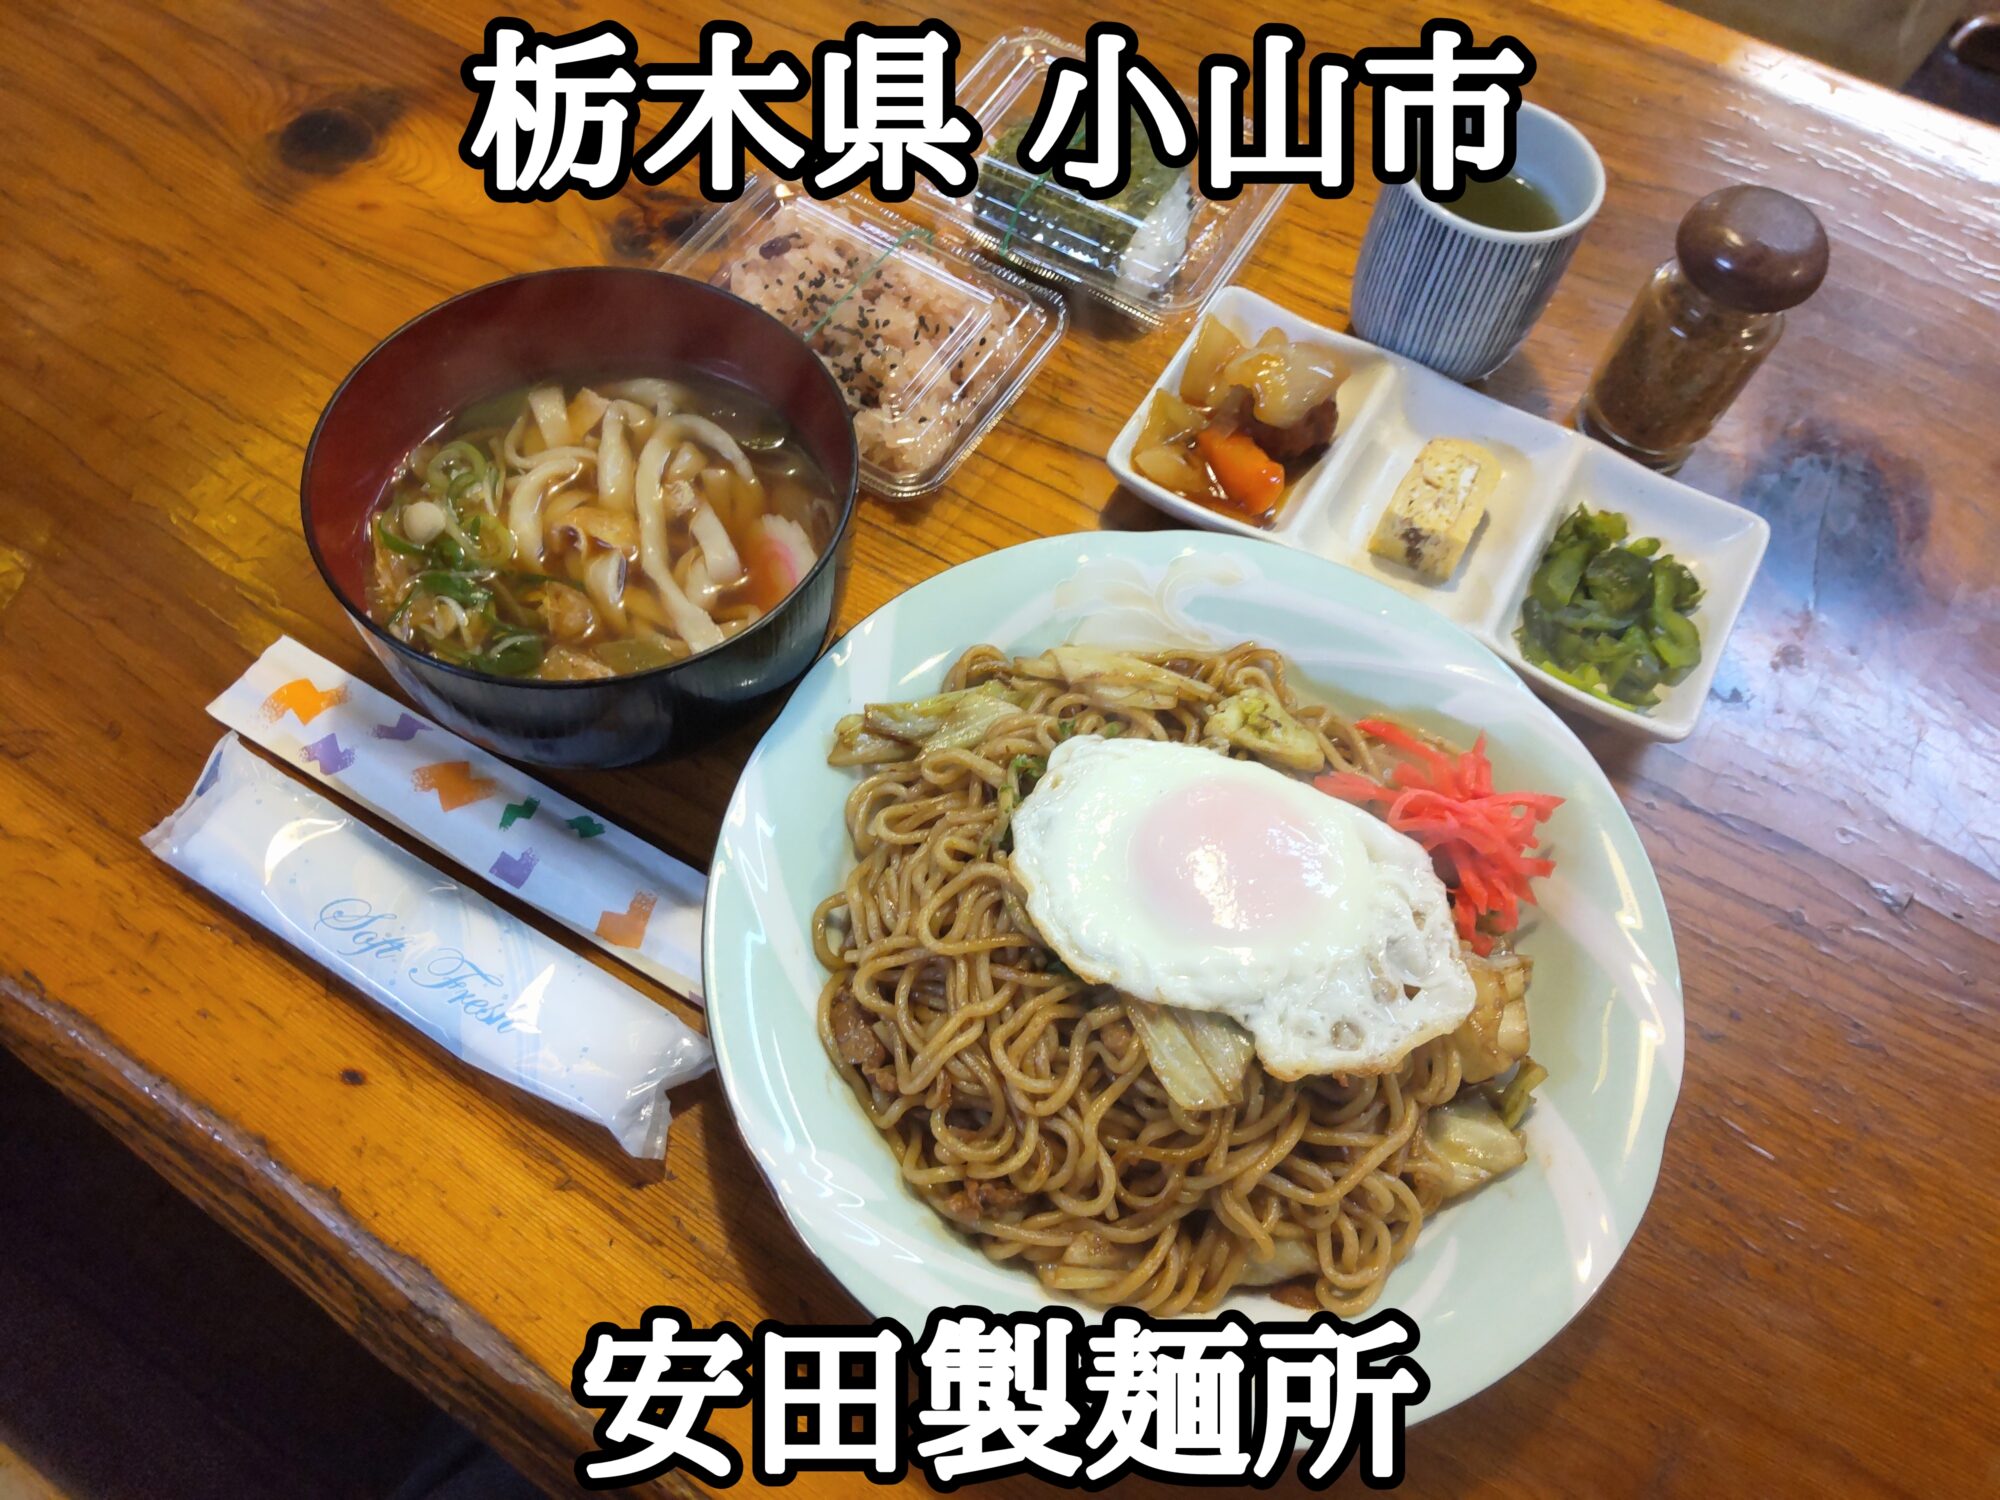 【栃木県】【小山市】「安田製麺所」オモウマい店で色々なサービスをされました 2